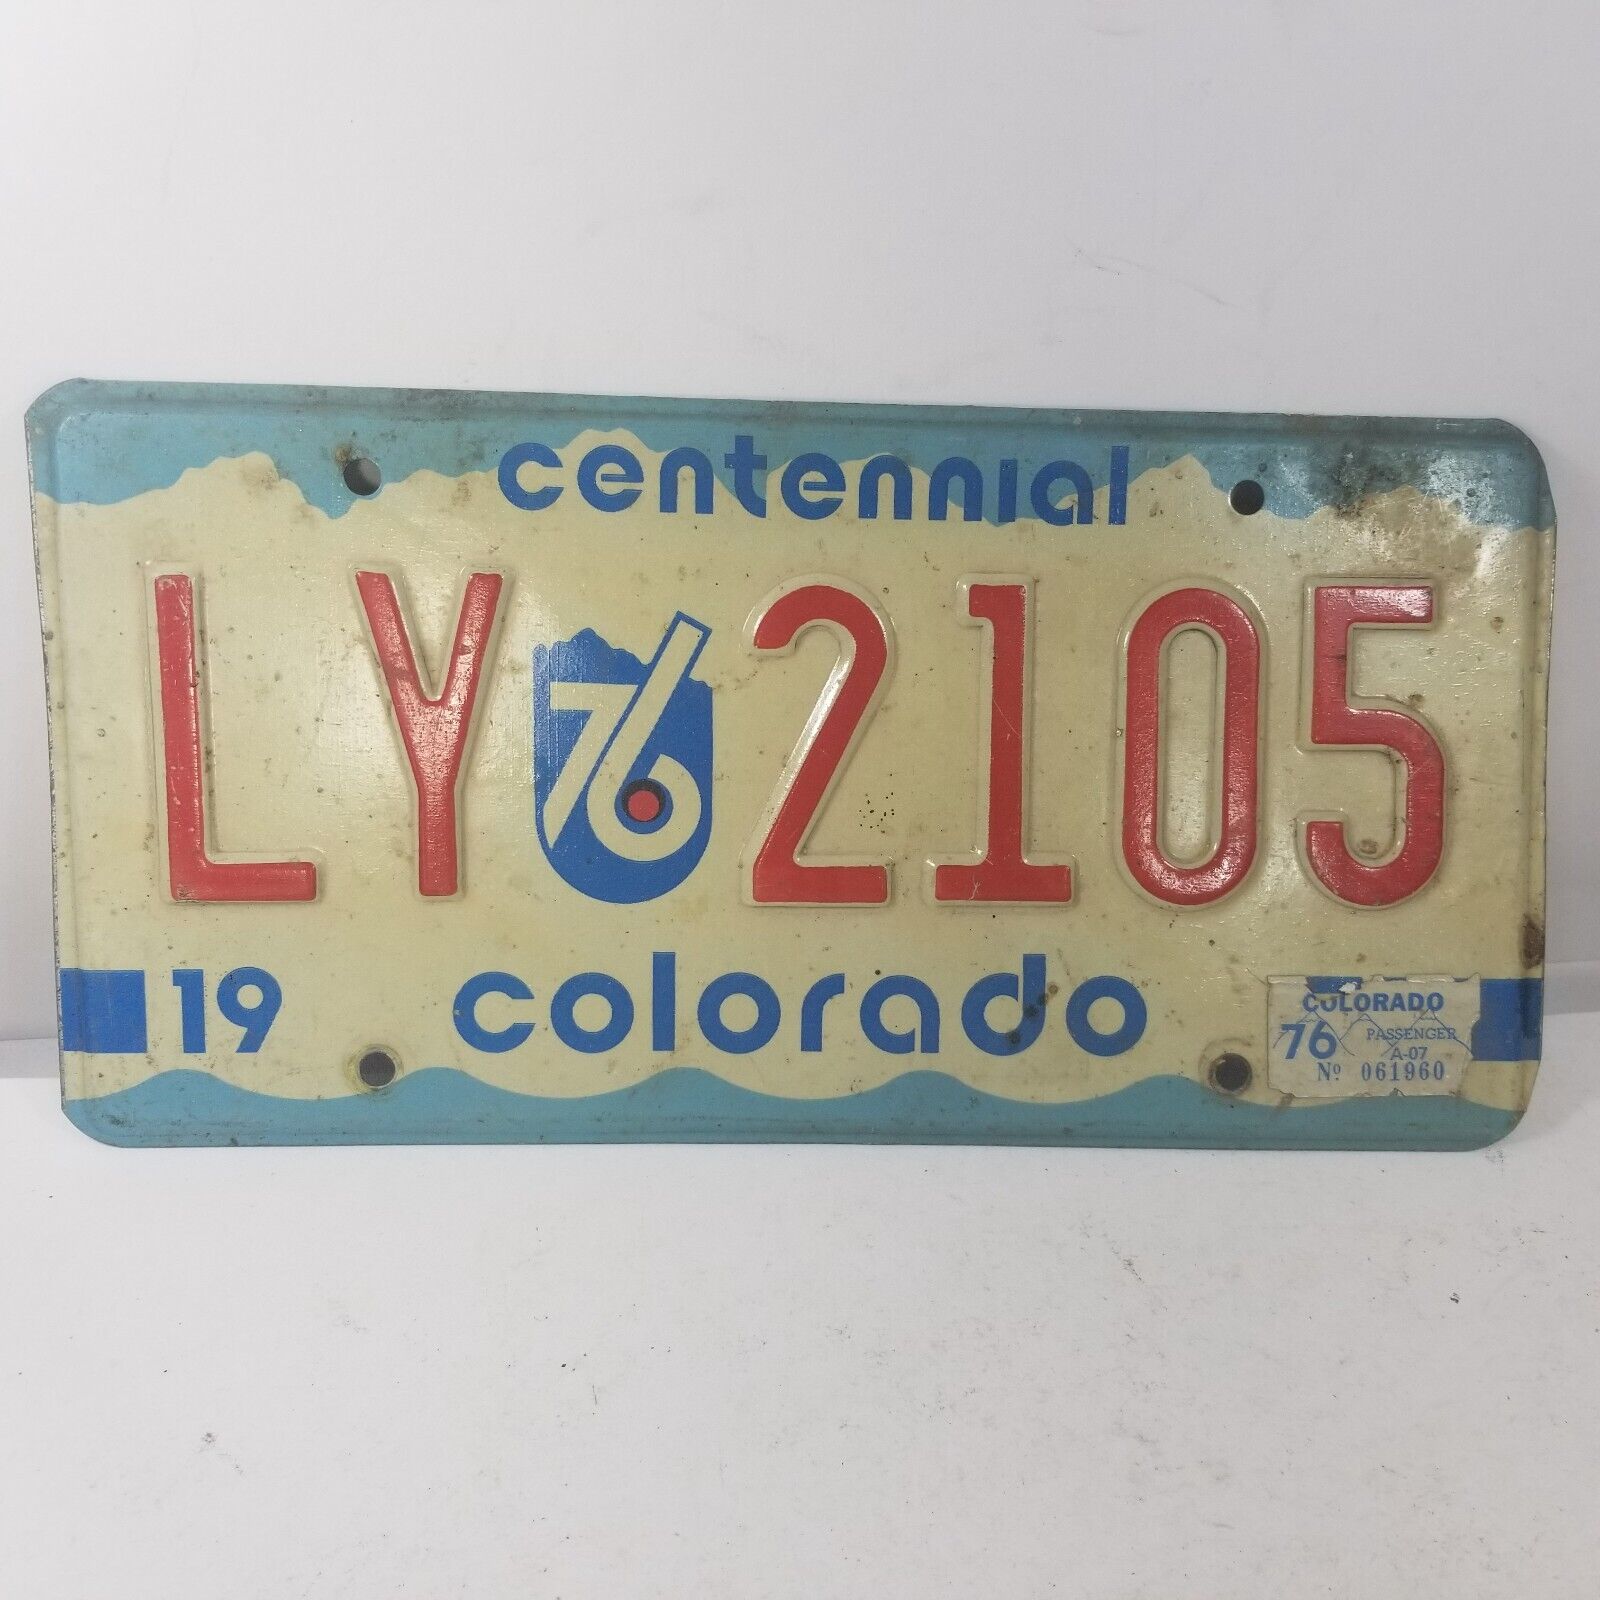 1976 Colorado Centennial License Plate LY-2105 Man cave BAR Decor